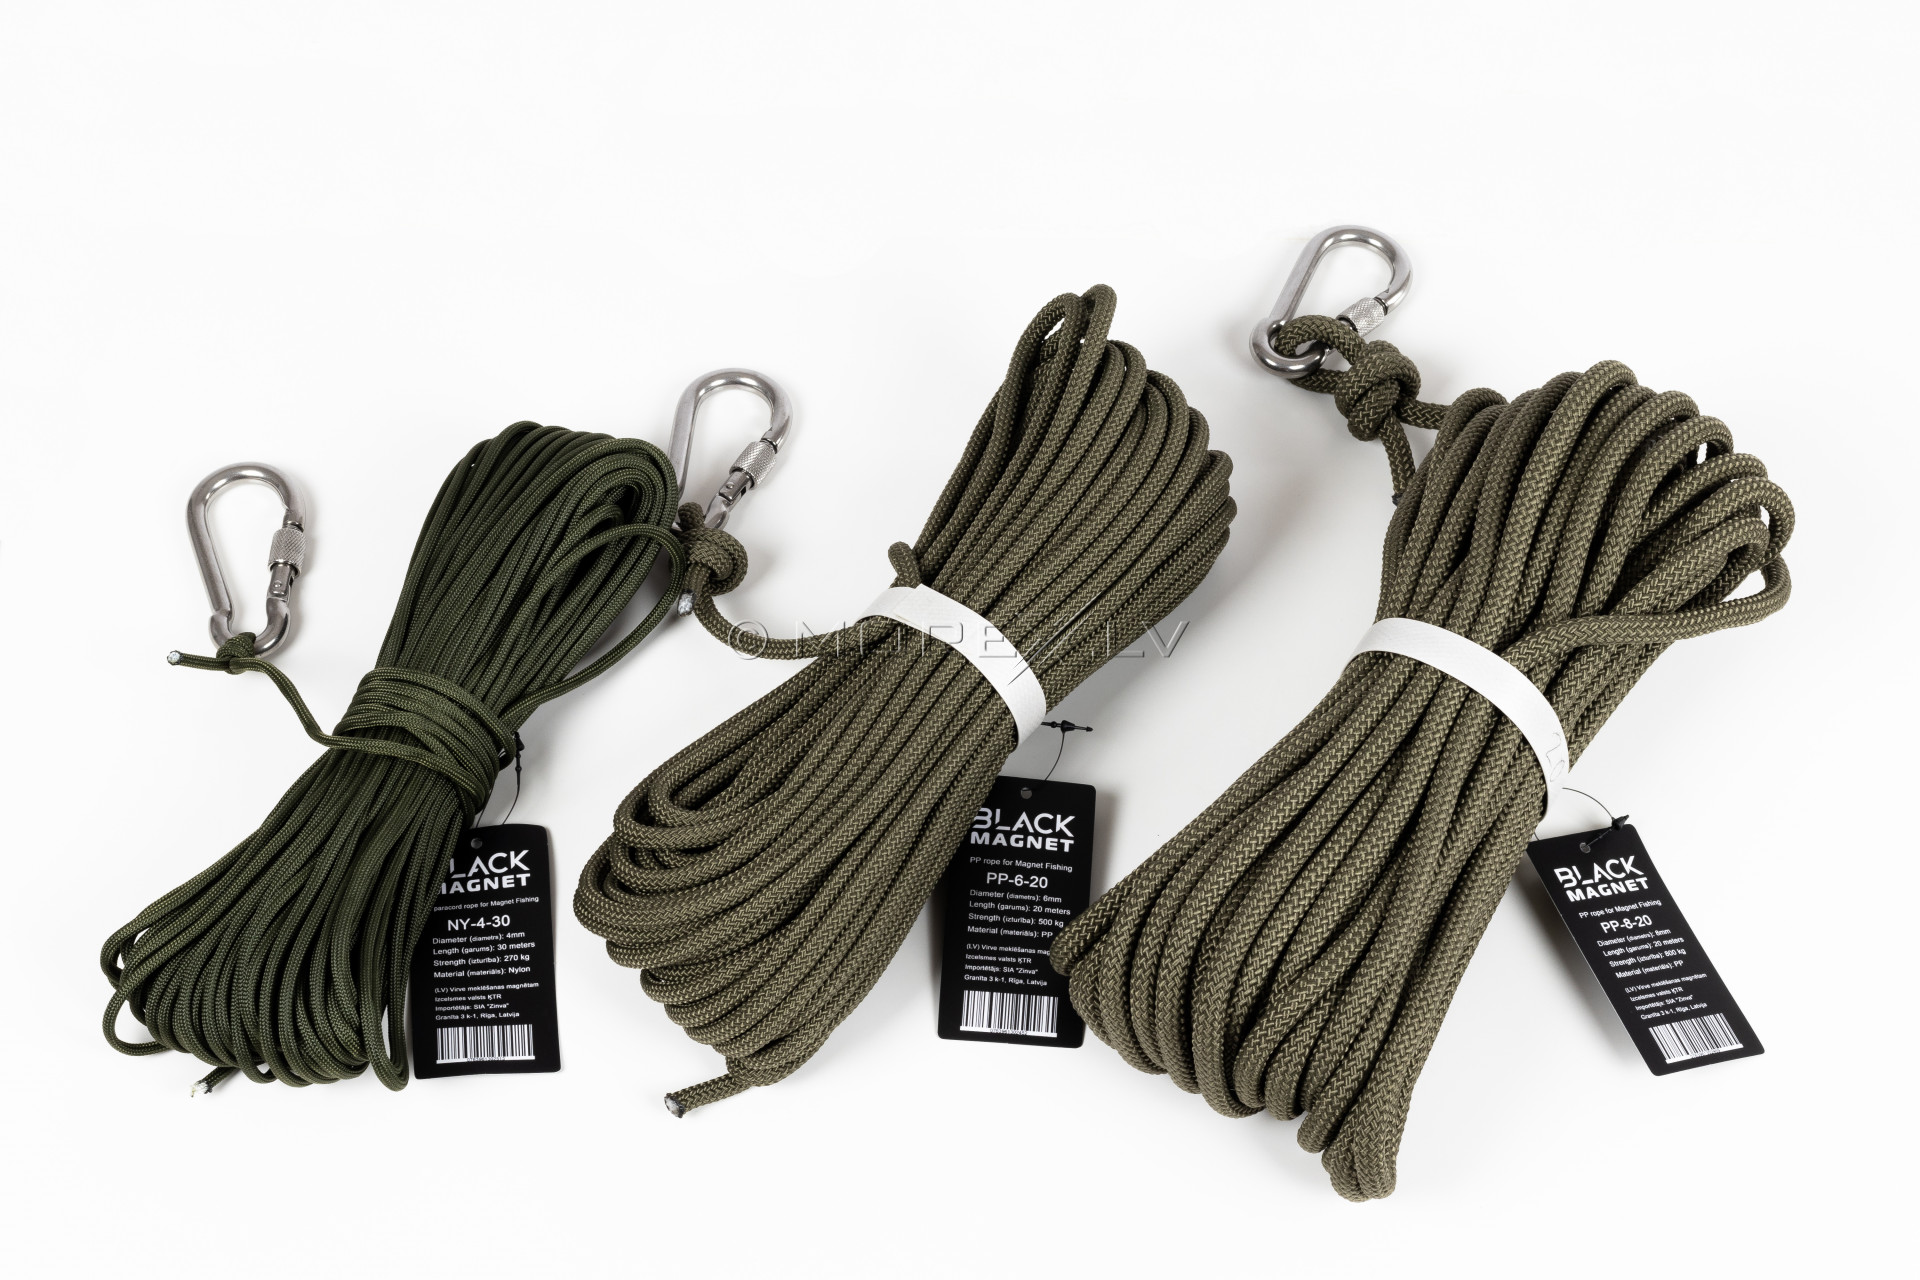 4 mm x 30 m paracord rope for Search Magnet Black Magnet ROPE-NY-4-30  Magnets pirkti internetu, prekė pristatoma nurodytu adresu, užsakykite,  parduotuvė Rygoje